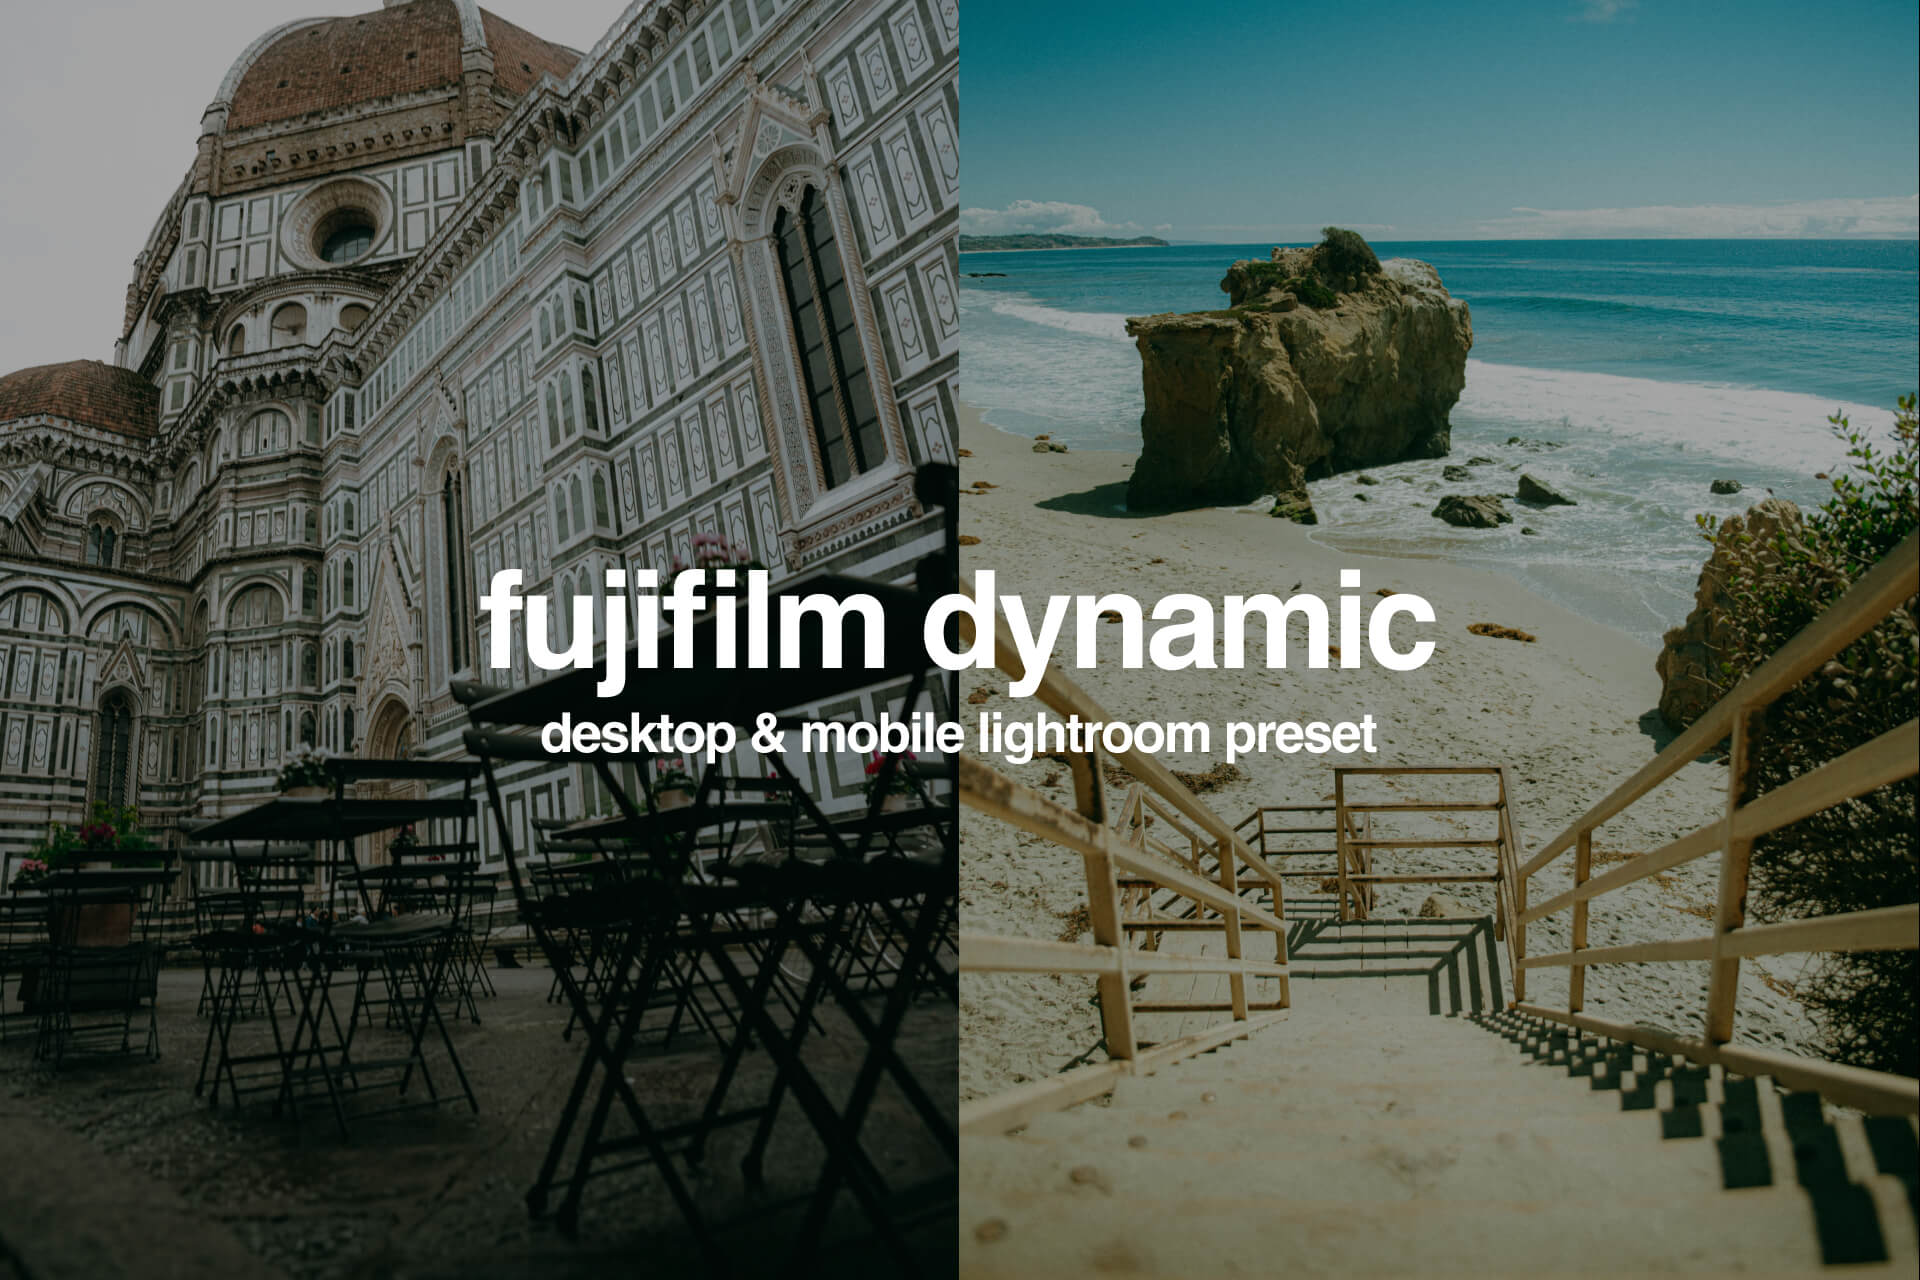 Free Fujifilm Dynamic Emulation Preset